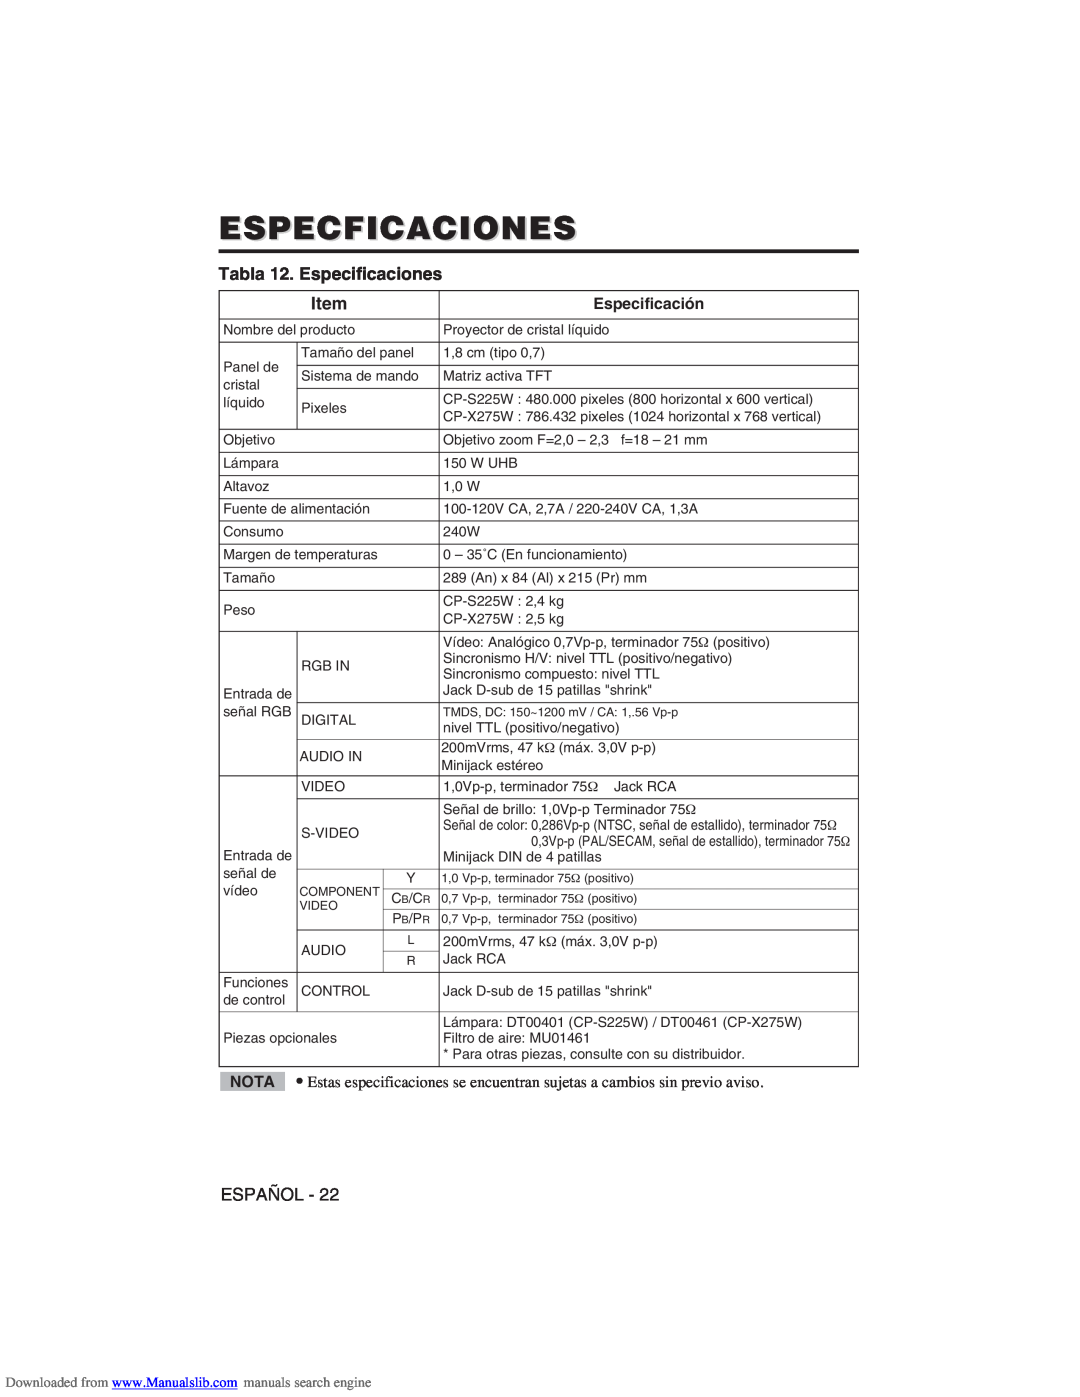 Hitachi CP-X275W user manual Especficaciones, Tabla 12. Especificaciones, Item 